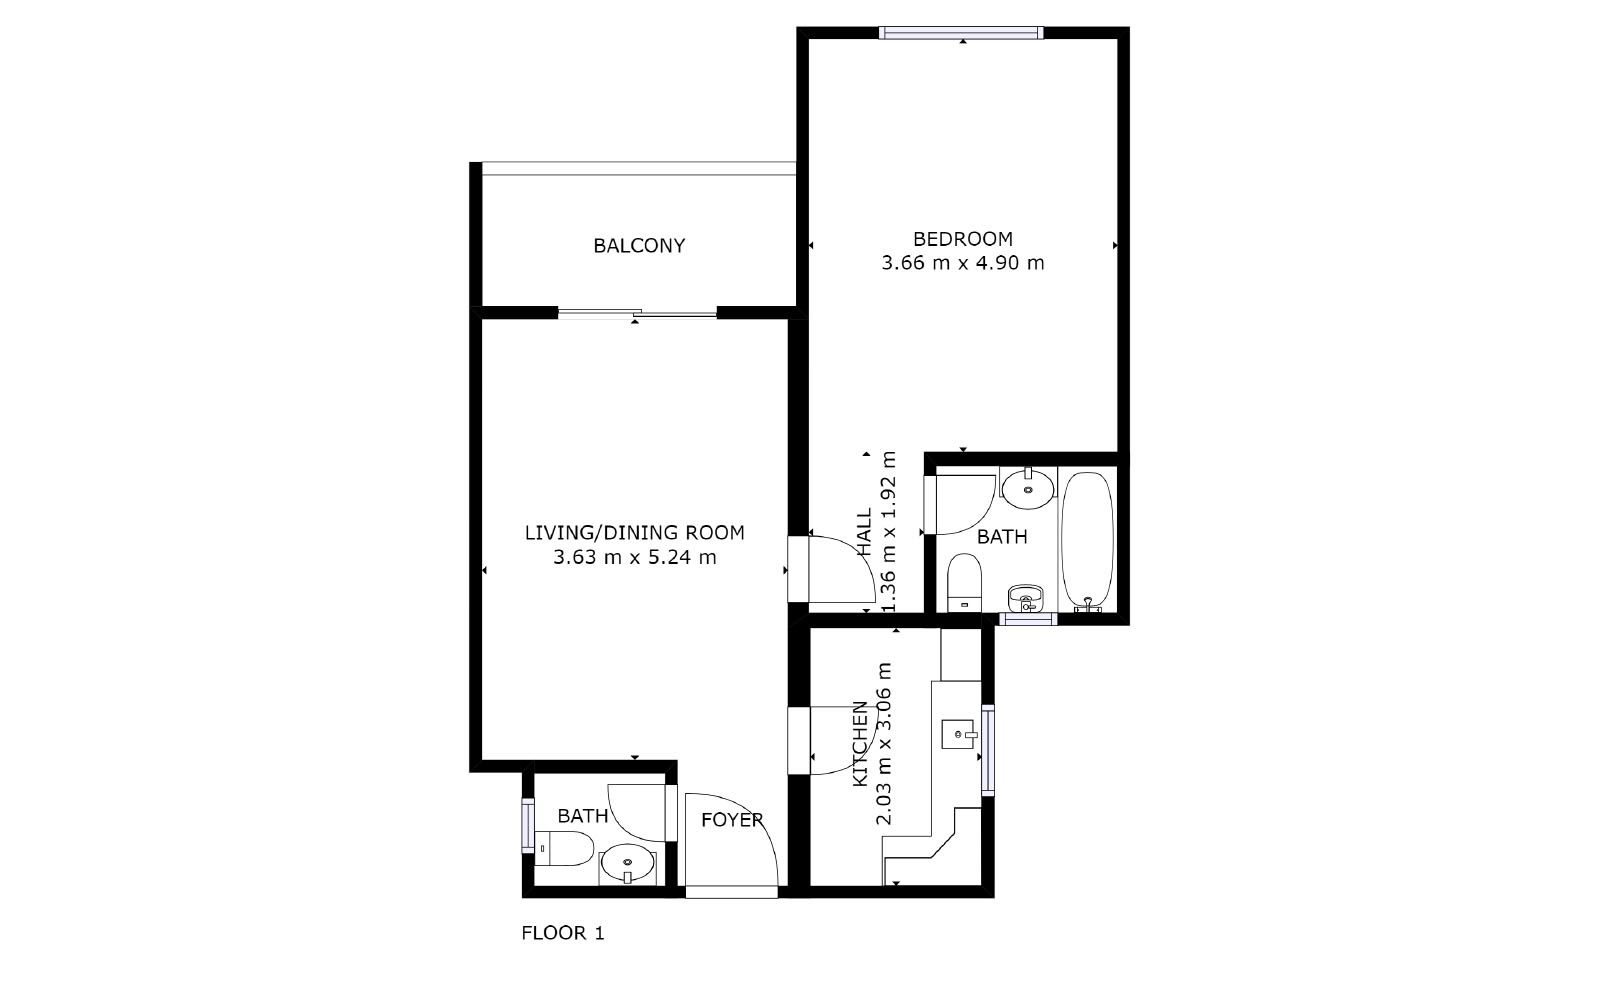 Floorplan Silicon Residence 1, B126